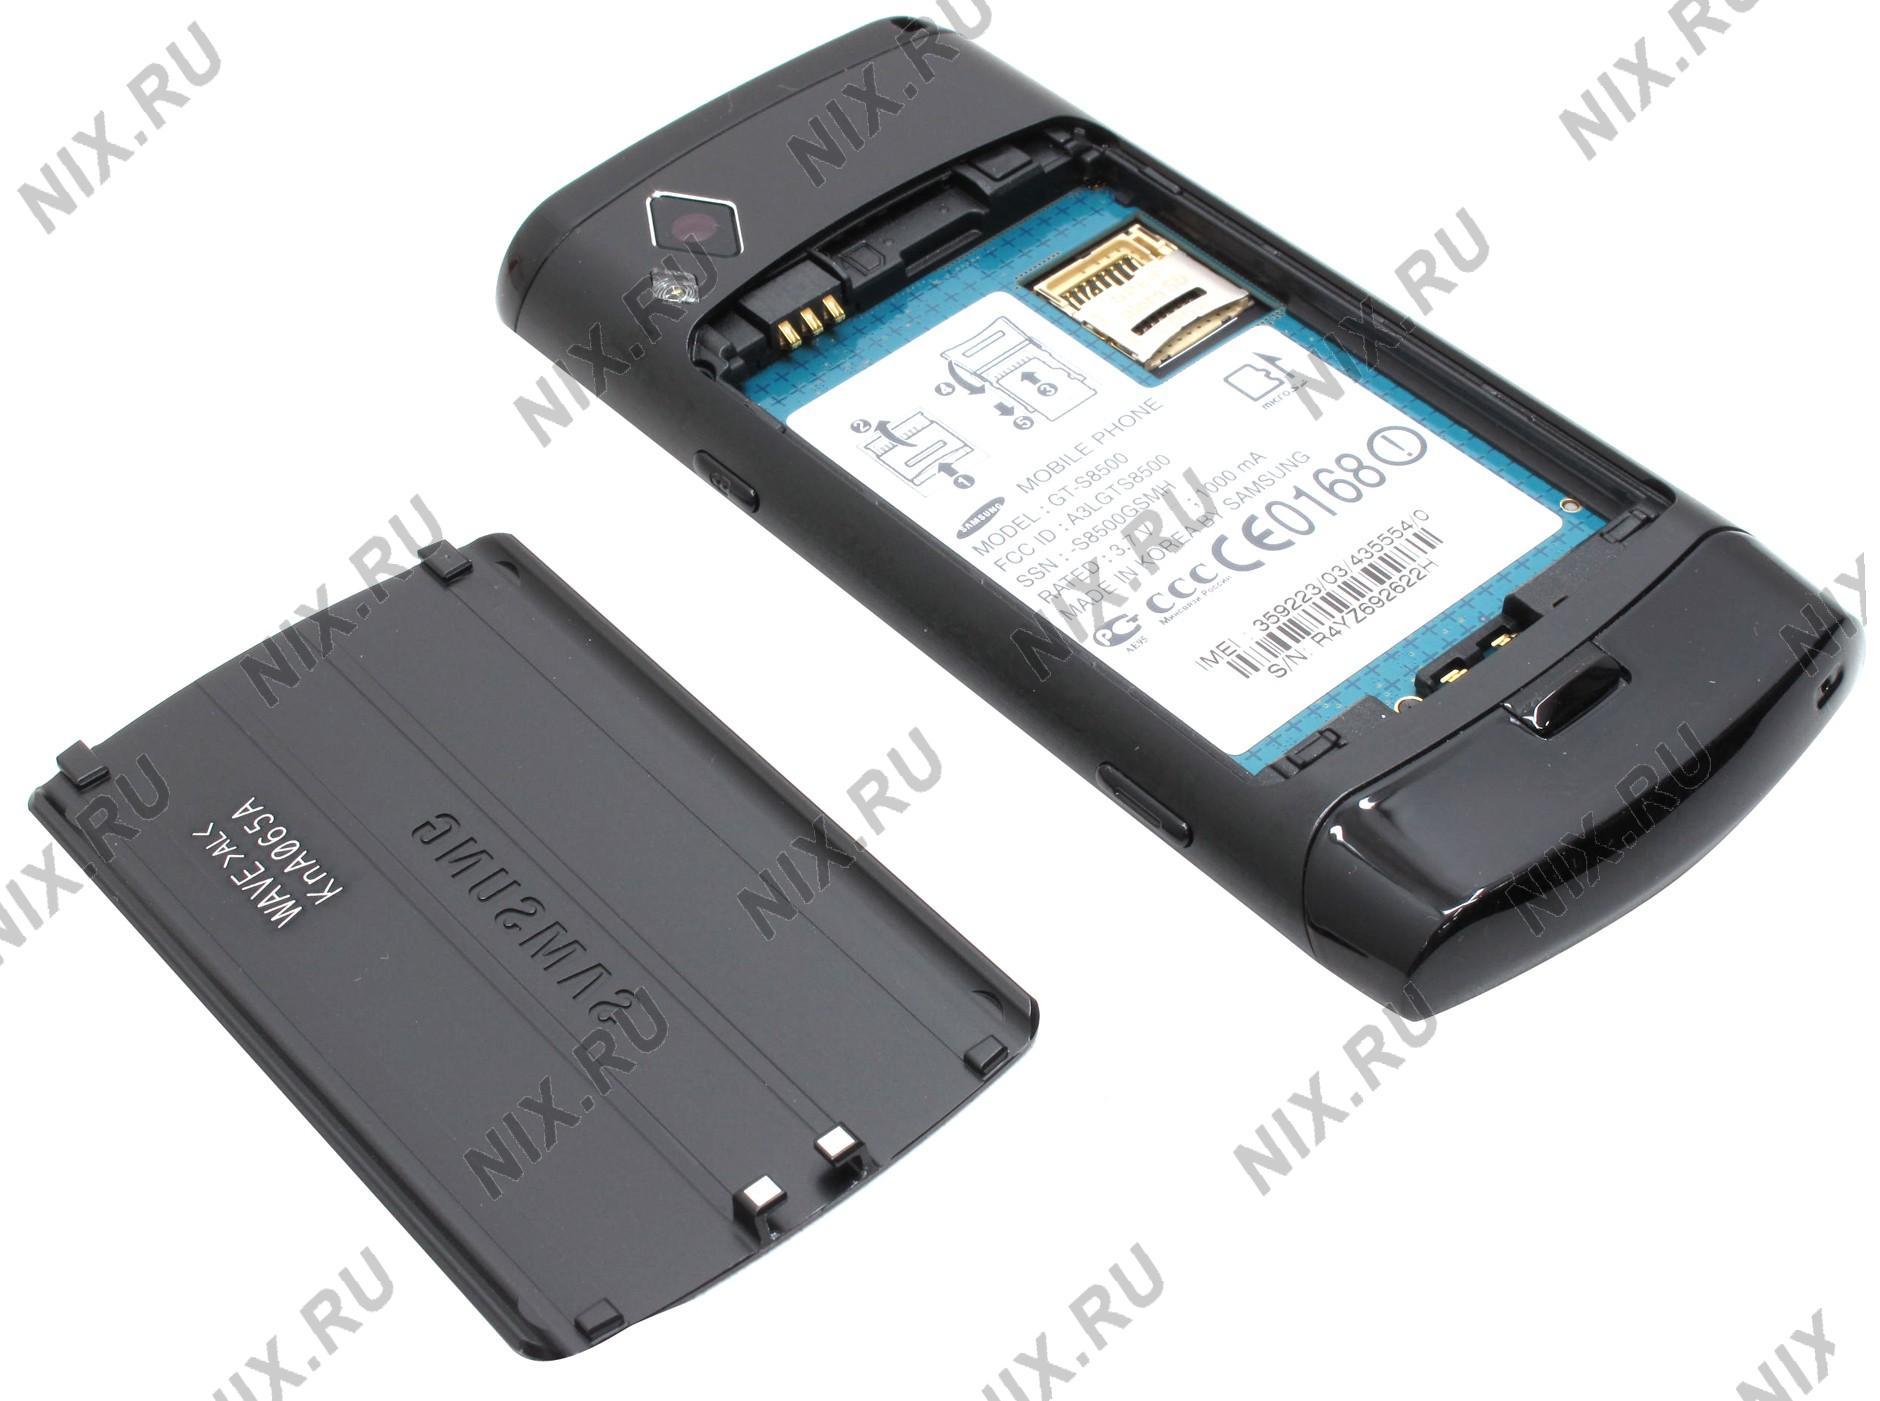 Samsung gt s8500 прошивка bada 2.0. прошивка смартфона samsung wave gt-s8500. что нужно для прошивки